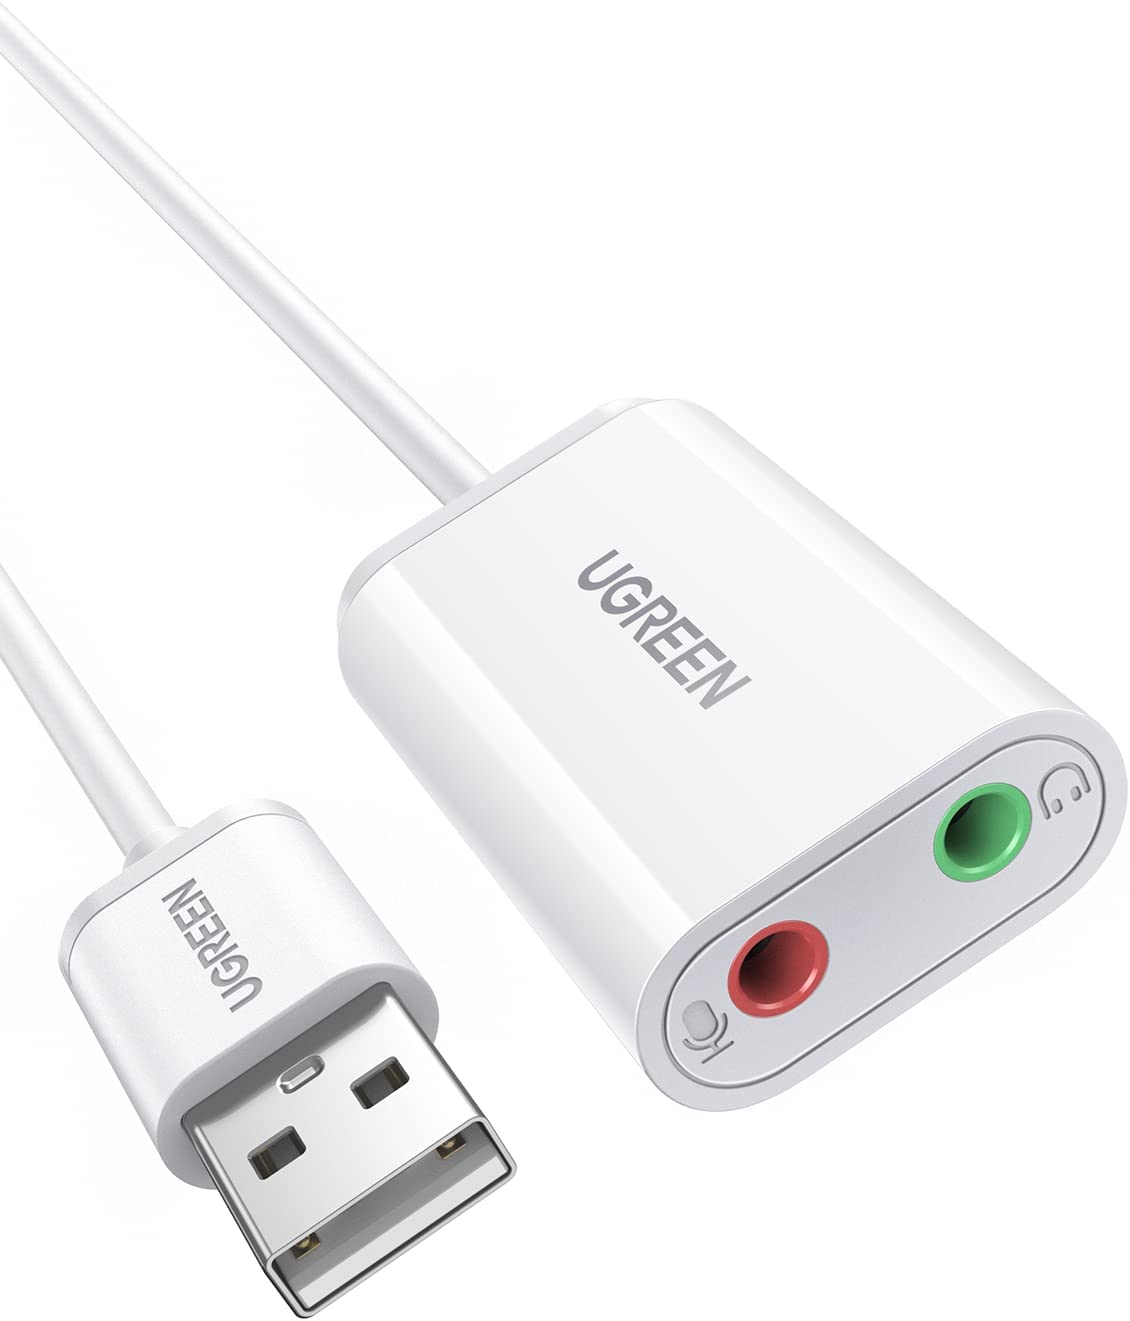 30143 Звуковая карта внешня UGREEN US205, USB to 2 AUX 3.5mm (микрофонный вход + аудиовыход), с проводом 15cm, цвет: белый